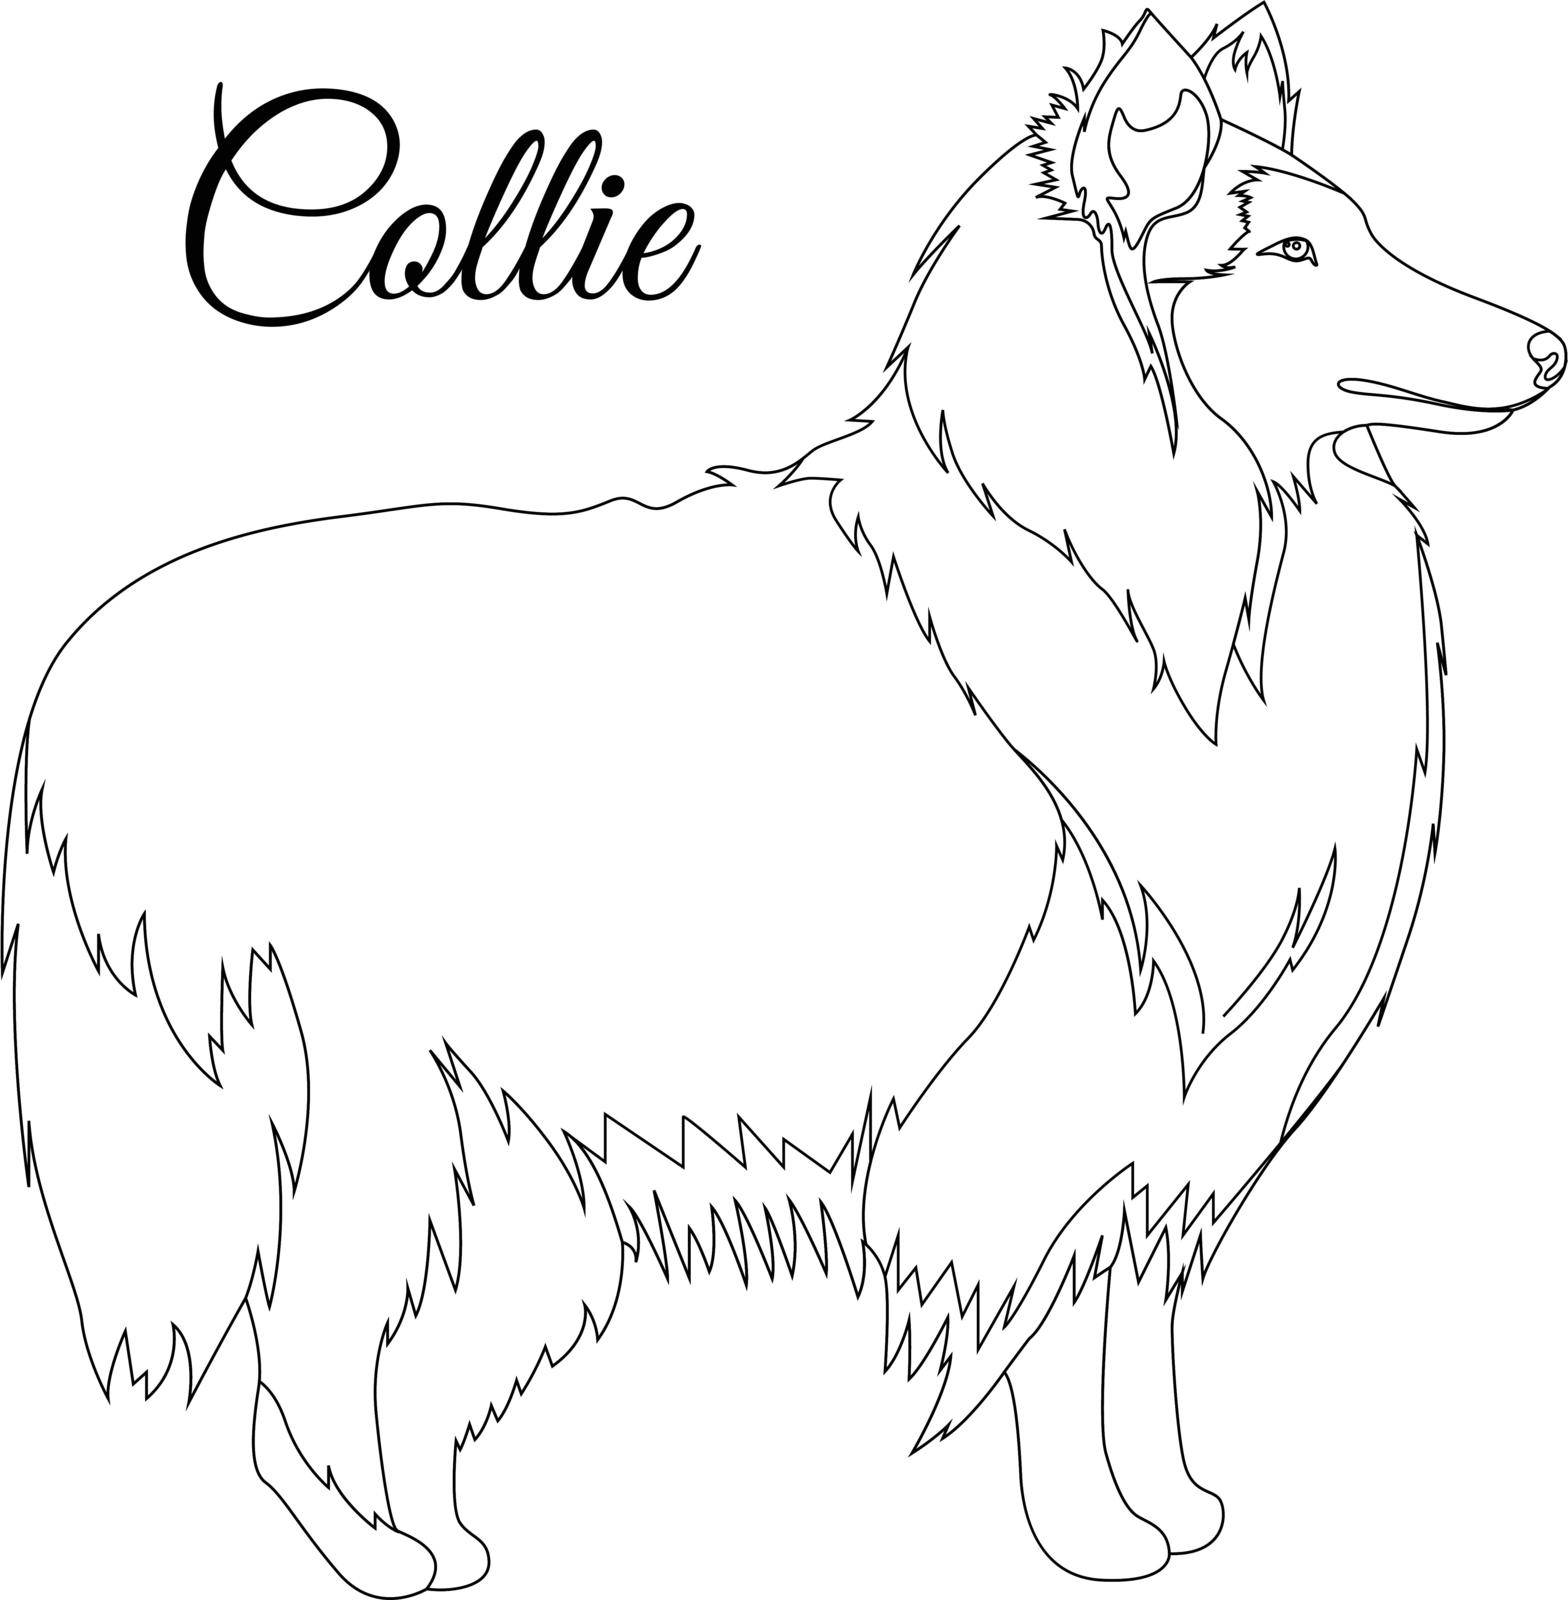 Collie dog outline vector illustration